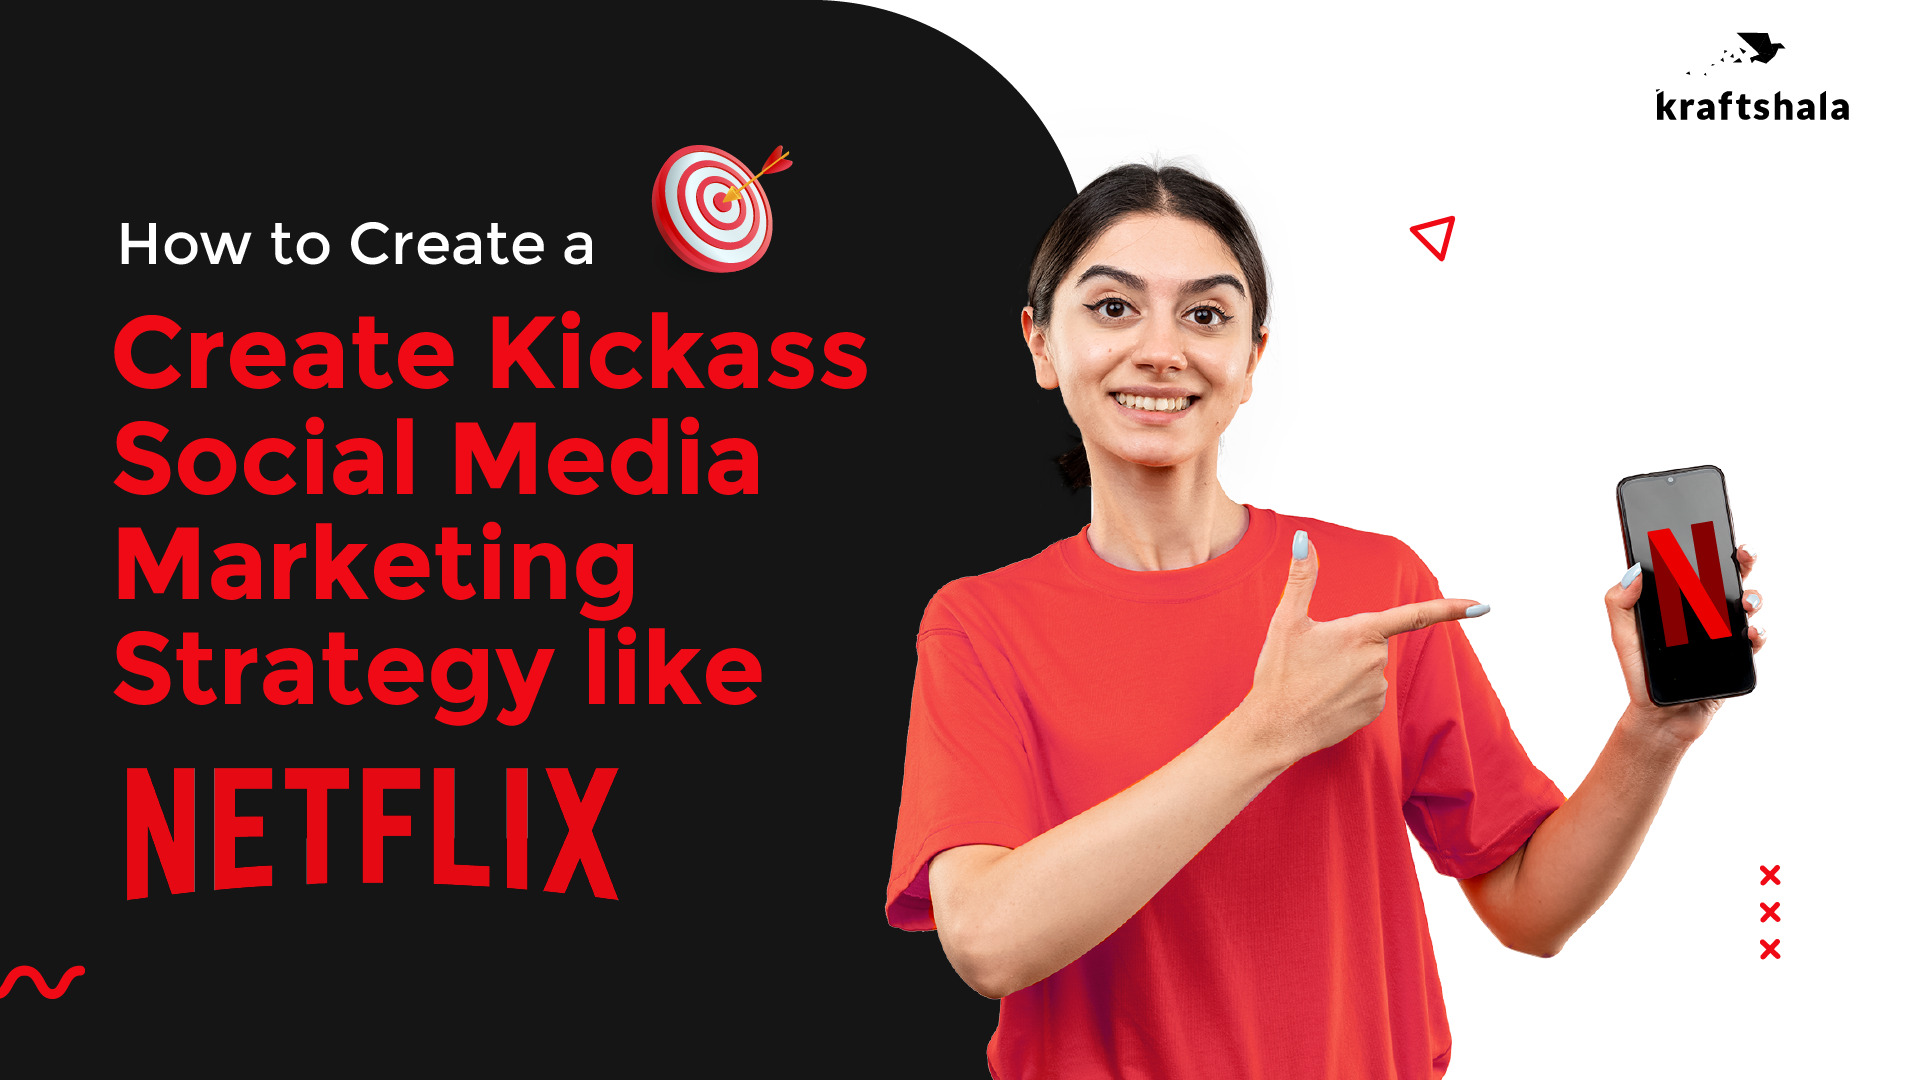 How to Create a Kickass Social Media Marketing Strategy Like Netflix?